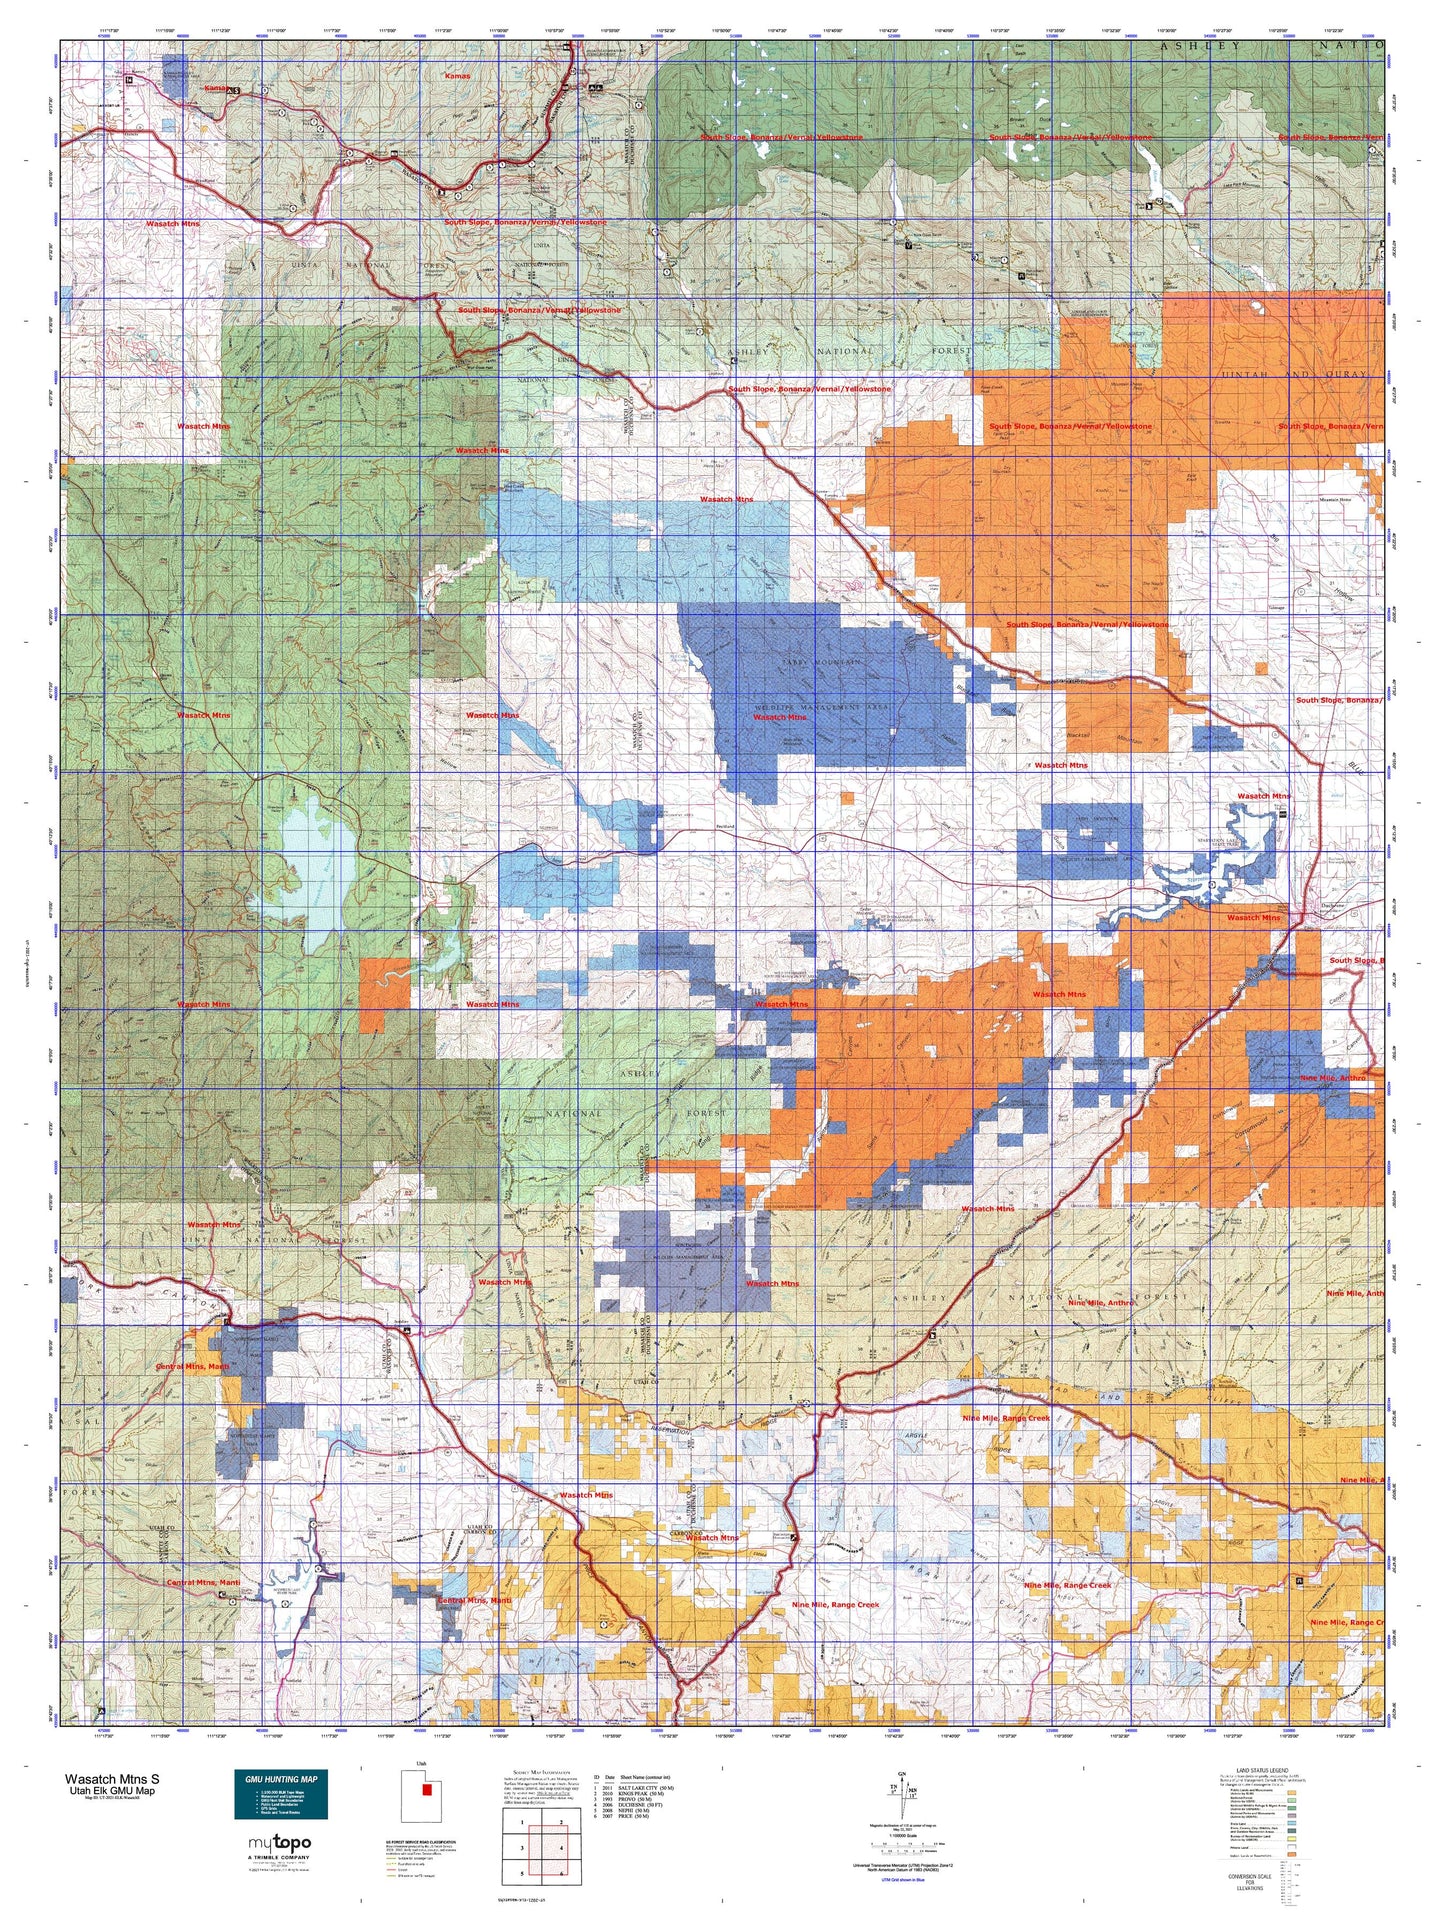 Utah Elk GMU Wasatch Mtns S Map Image